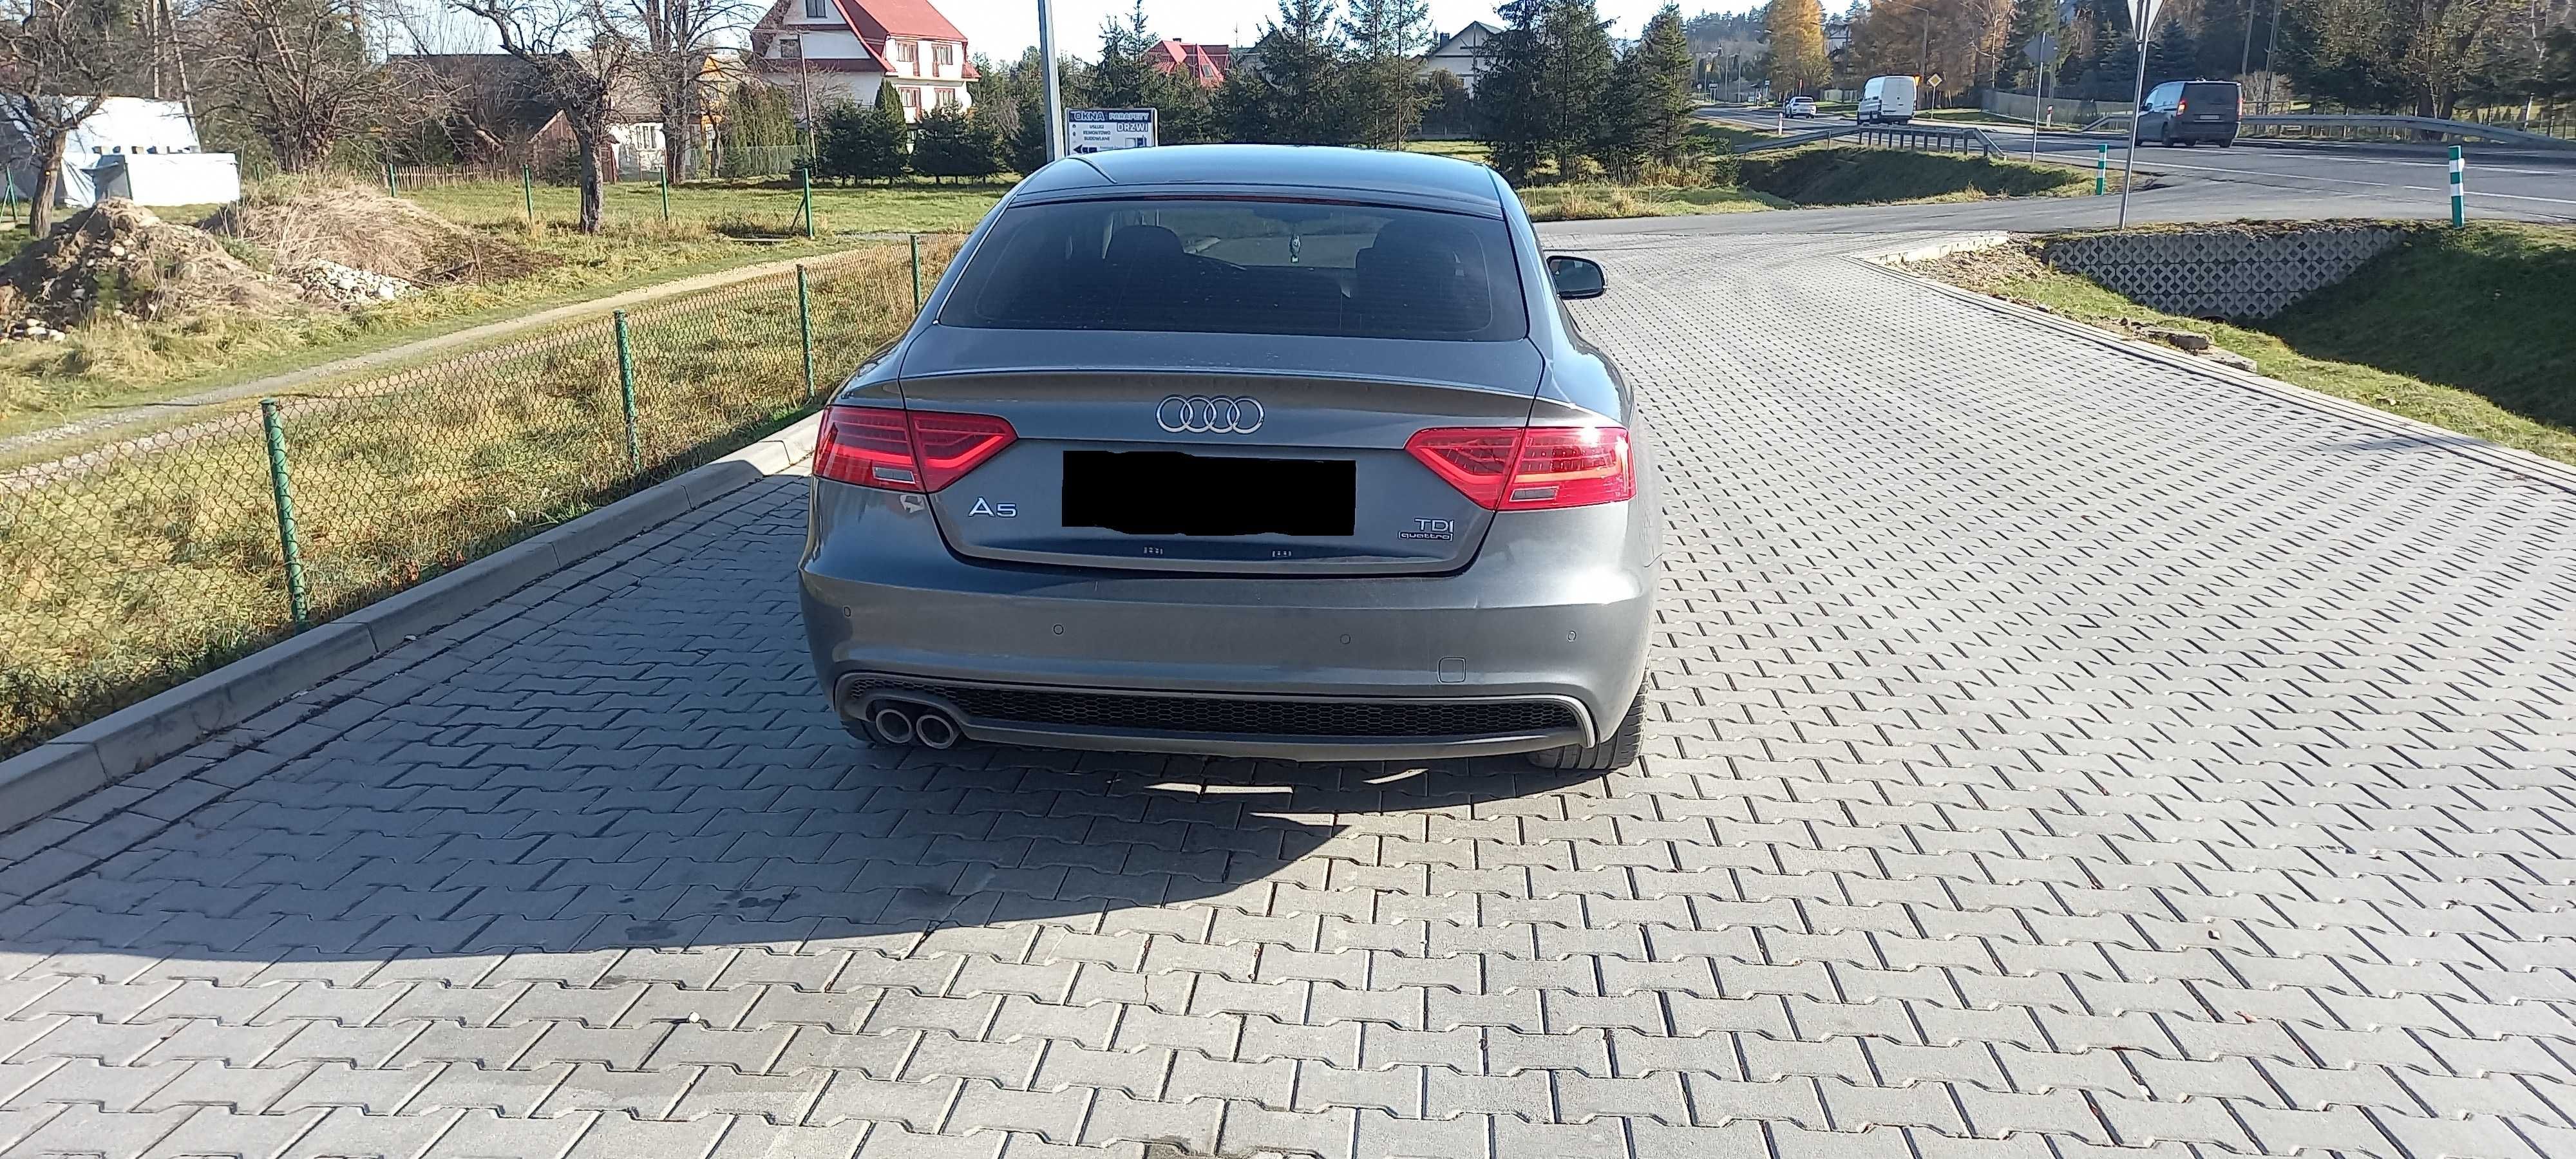 Audi a5 sline quattro